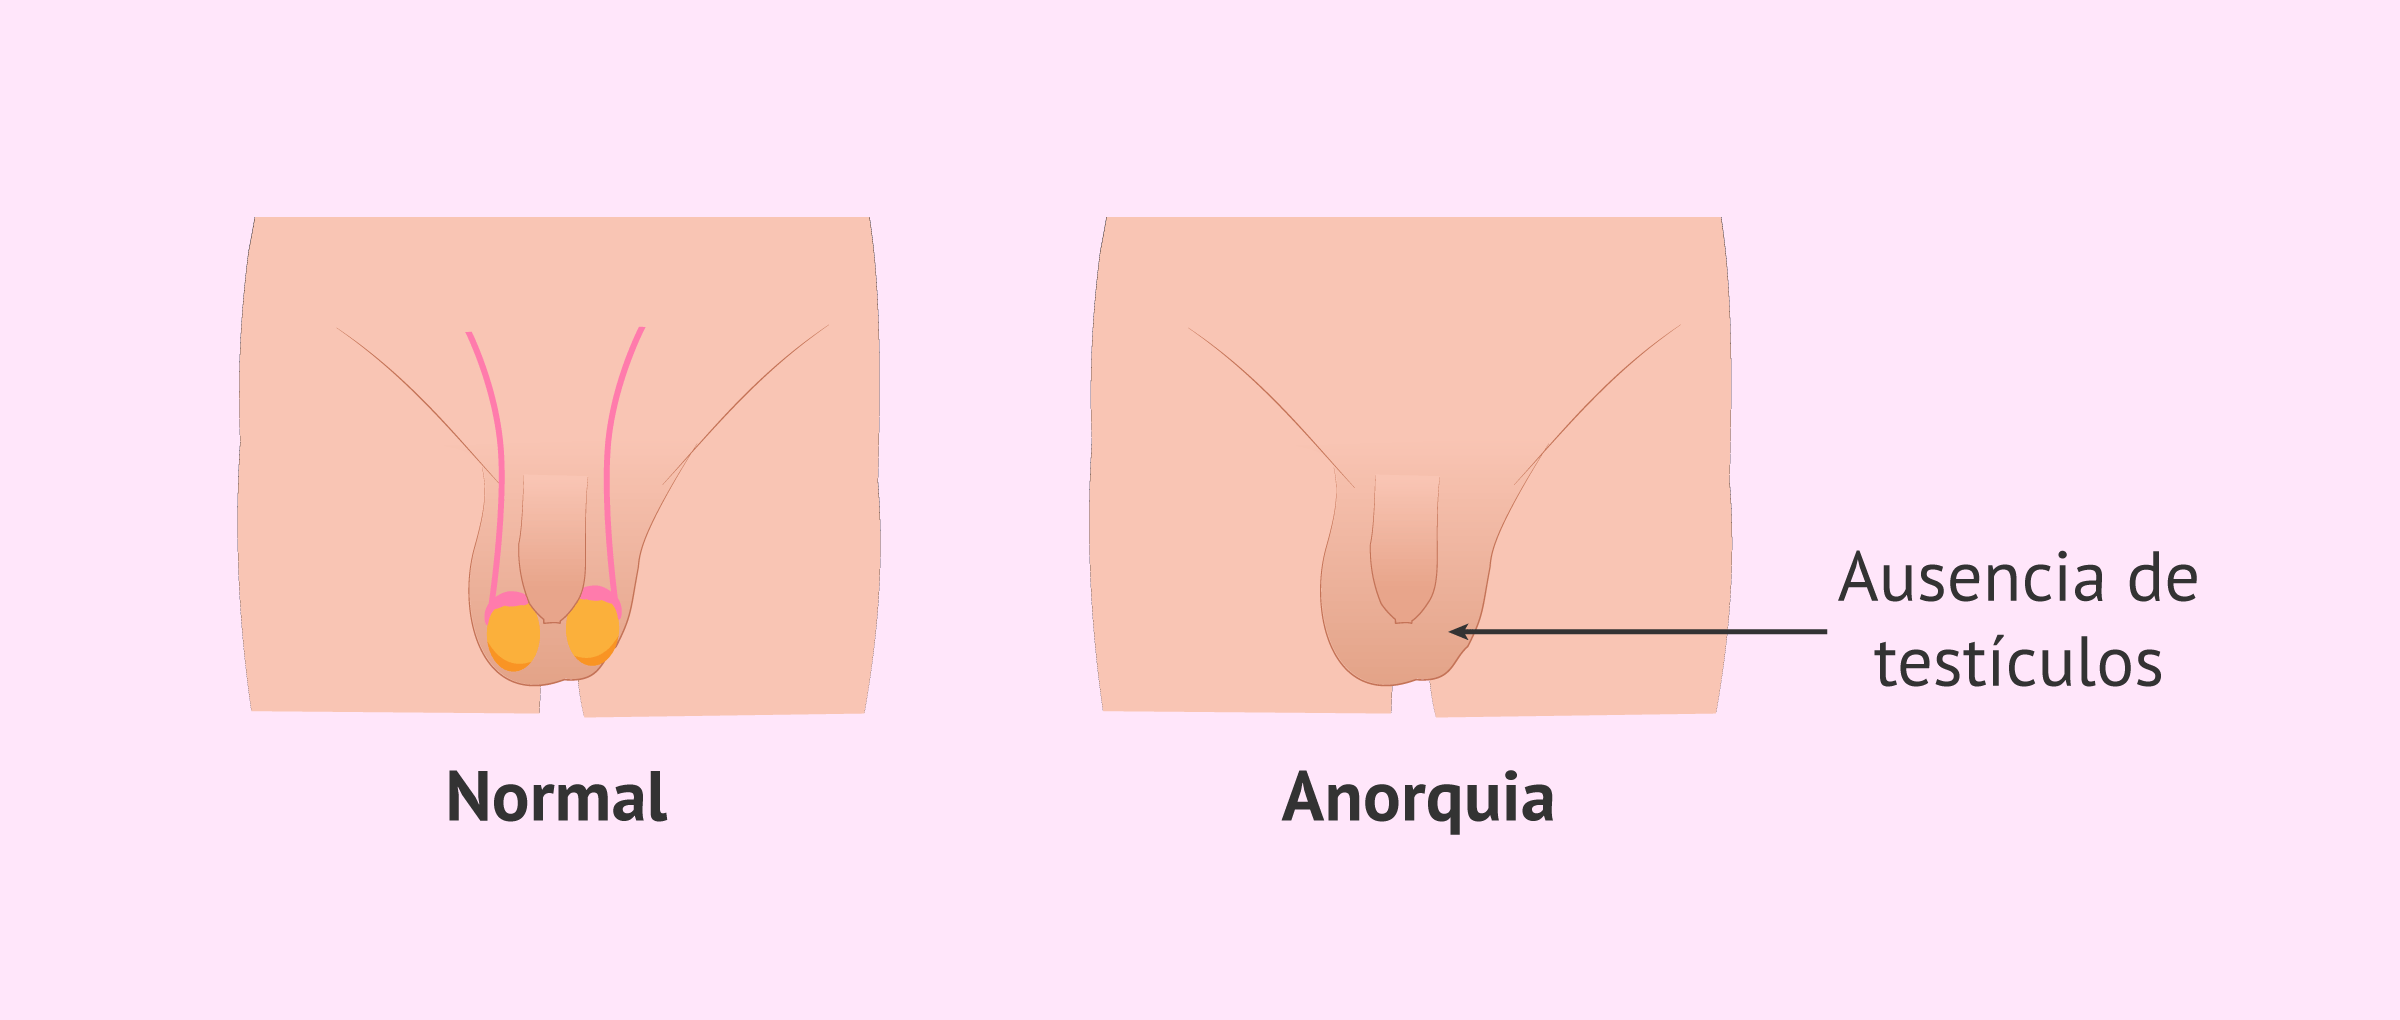 anorquia-ausencia-testiculos